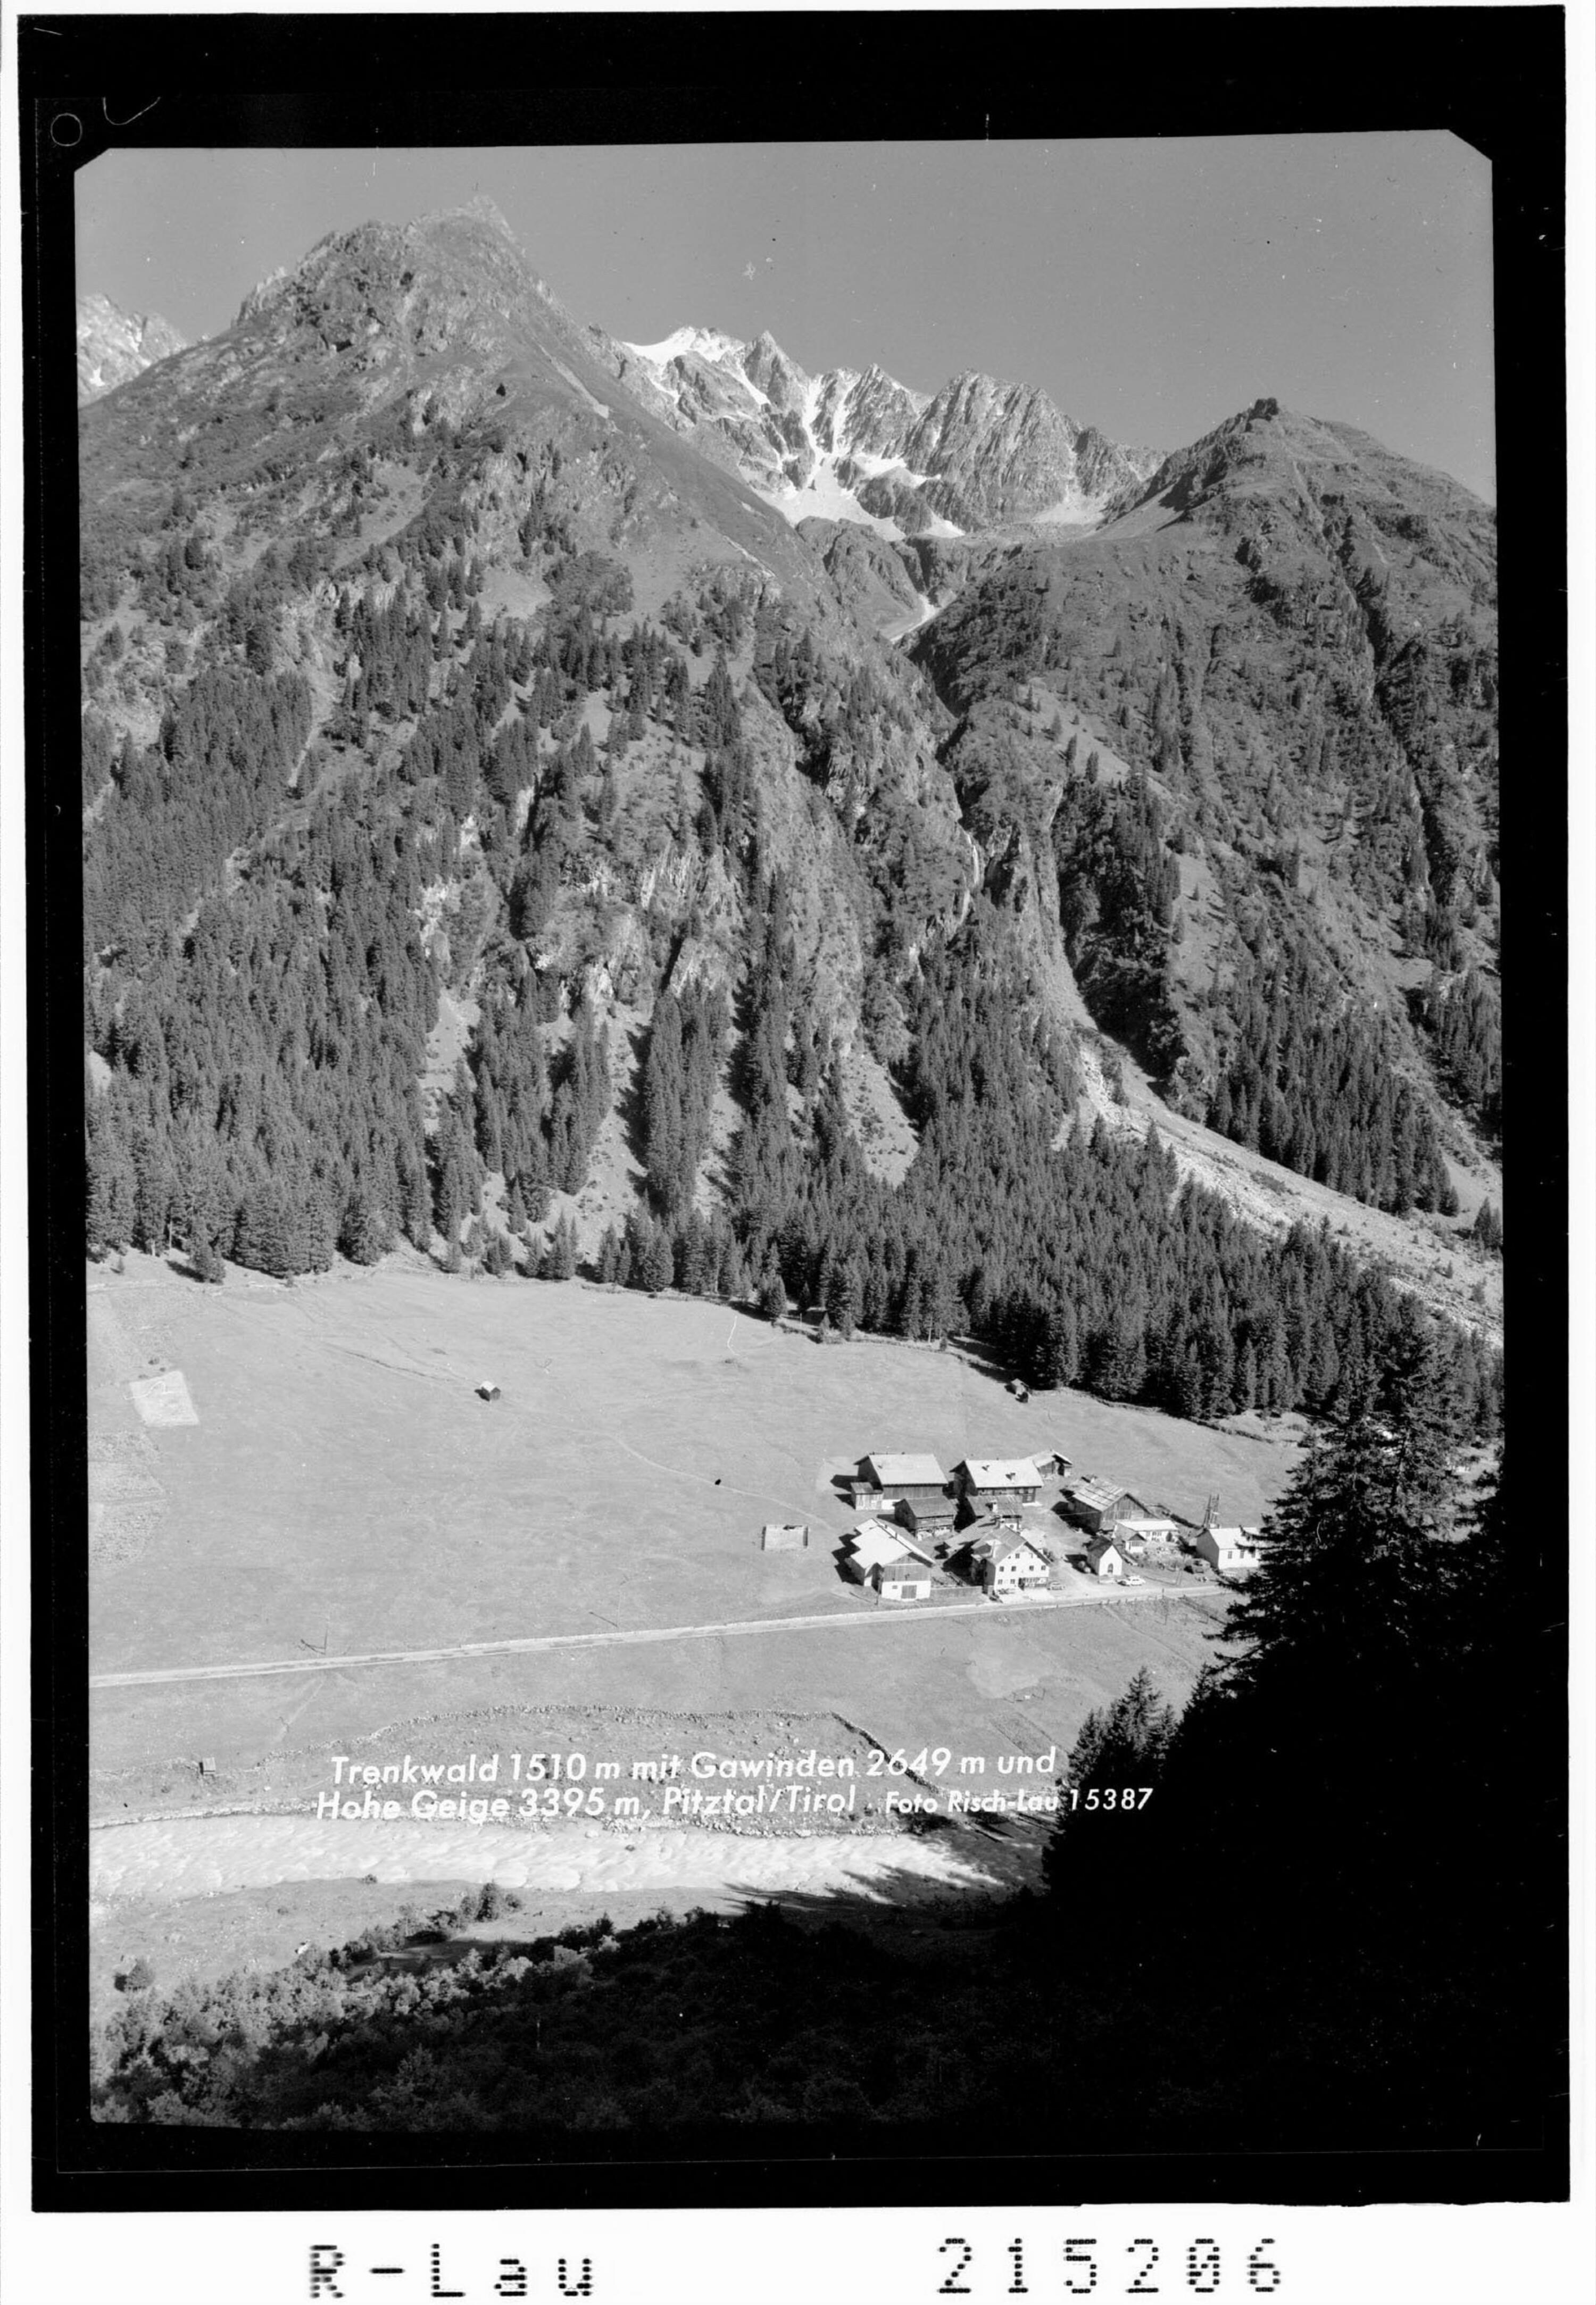 Trenkwald 1510 m mit Gawinden 2649 und Hohe Geige 3395 m, Pitztal / Tirol></div>


    <hr>
    <div class=